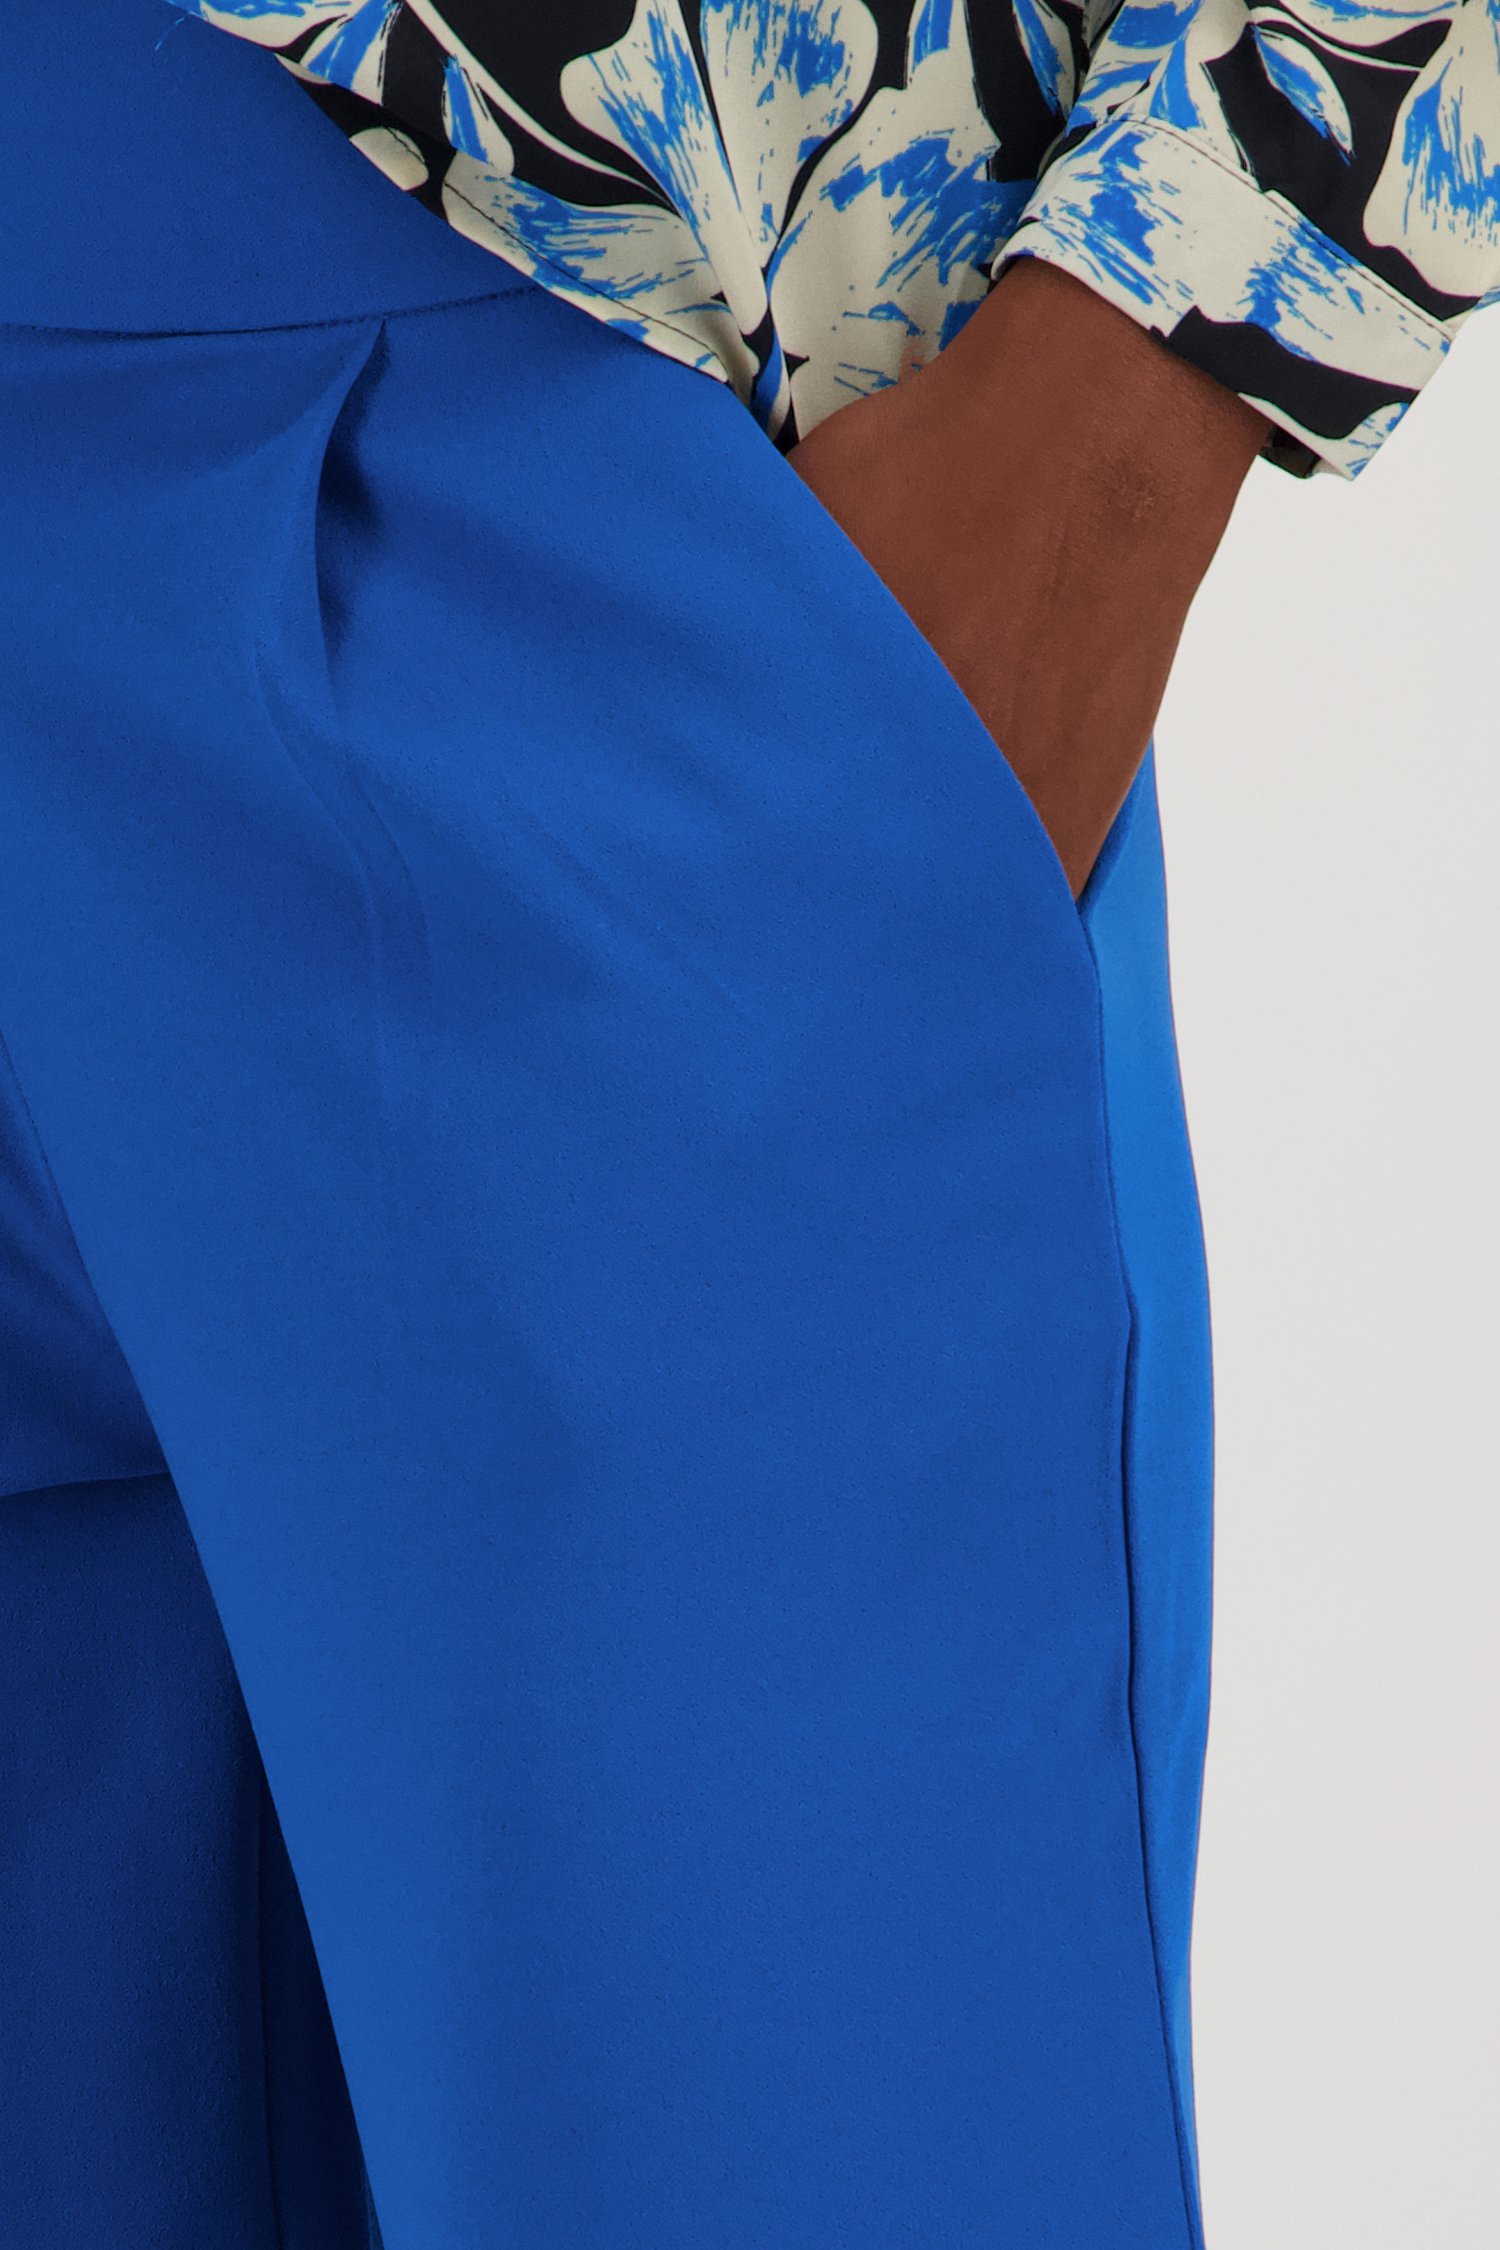 Pantalon bleu avec taille élastiquée de JDY pour Femmes